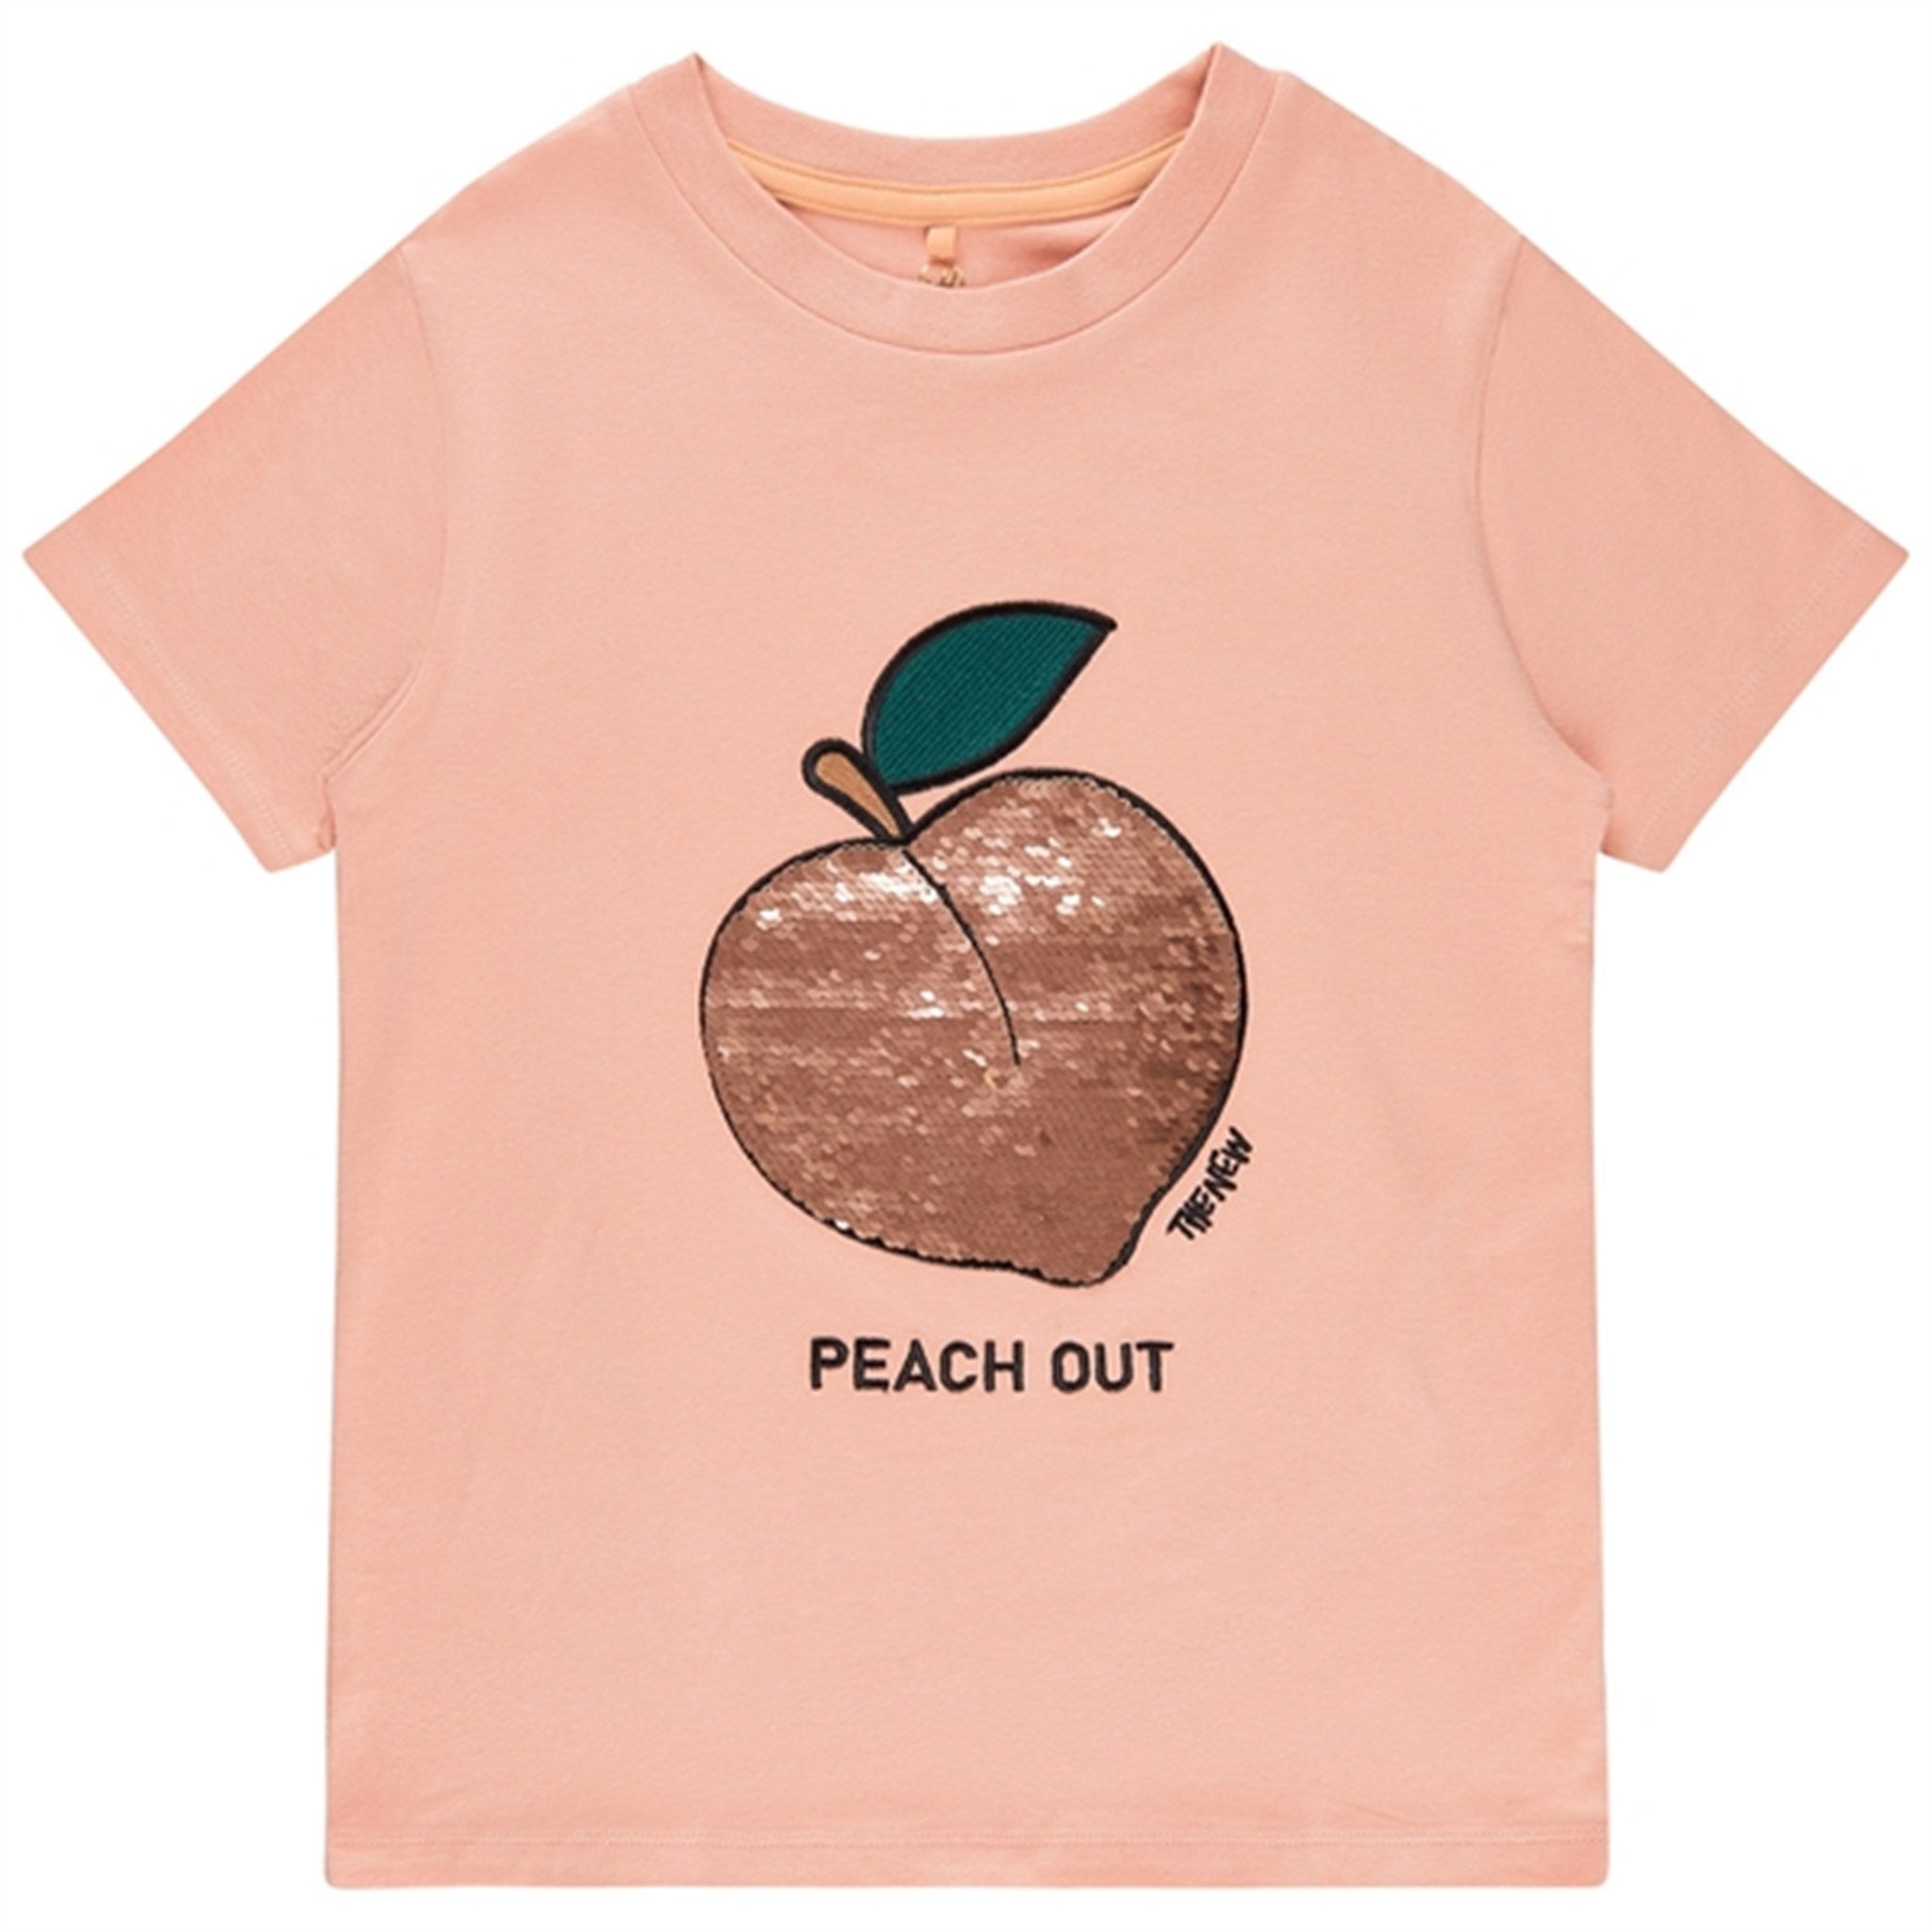 THE NEW Peach Beige Feach T-shirt